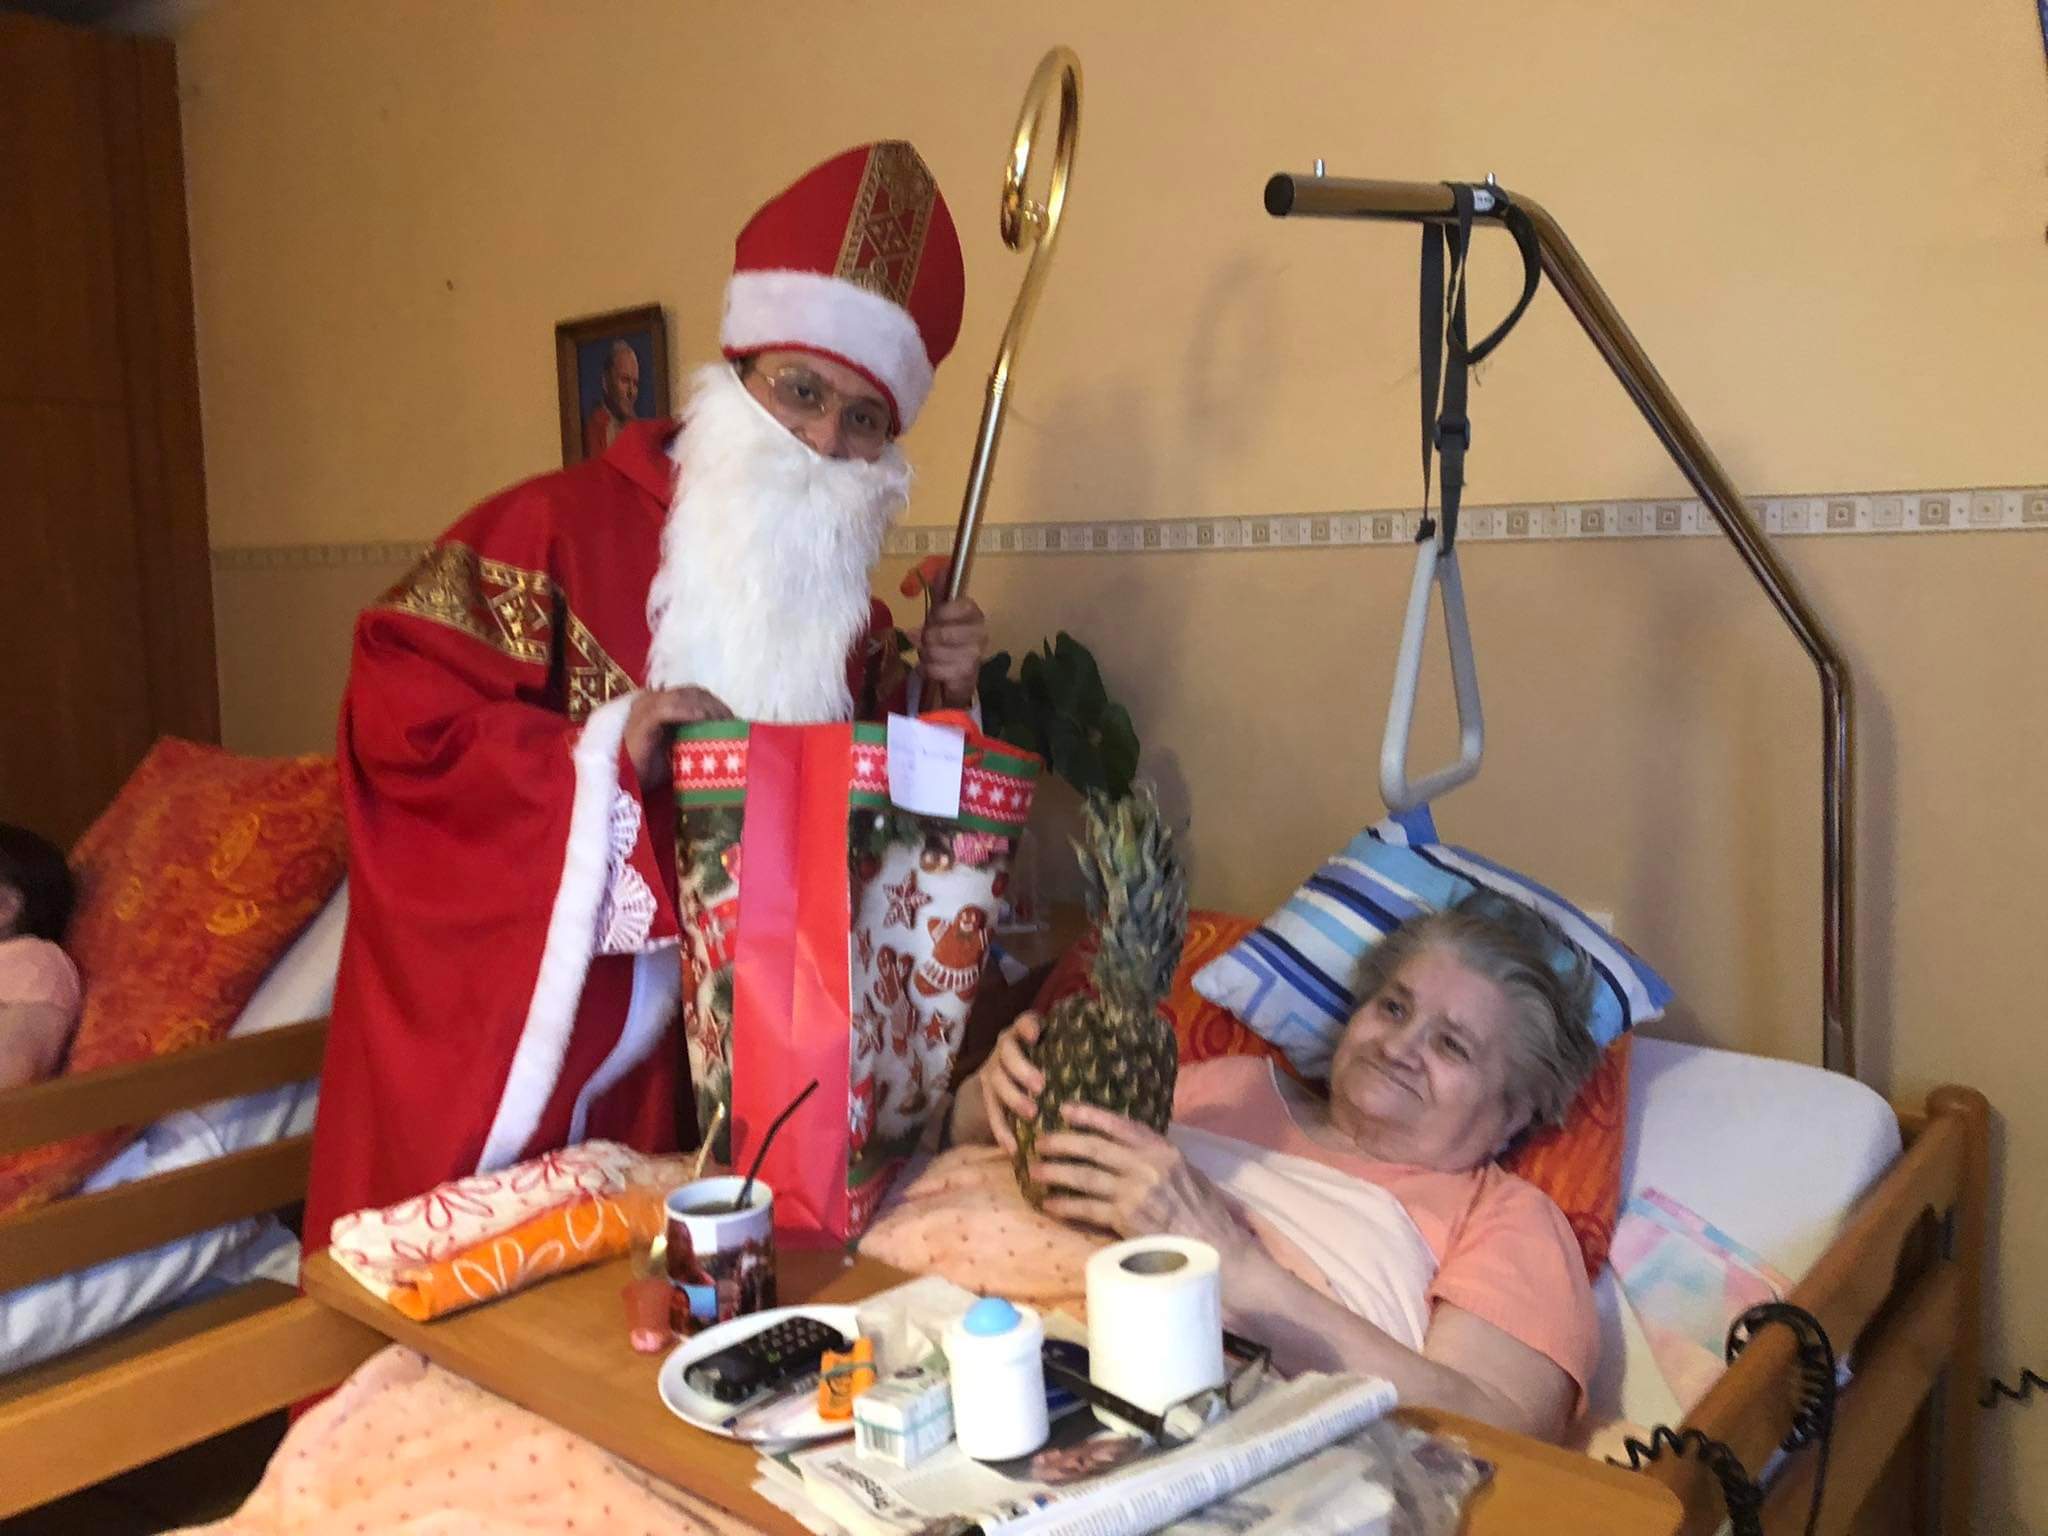 Mikołaj wręcza prezent Seniorce. Seniorka trzyma ananas w rękach